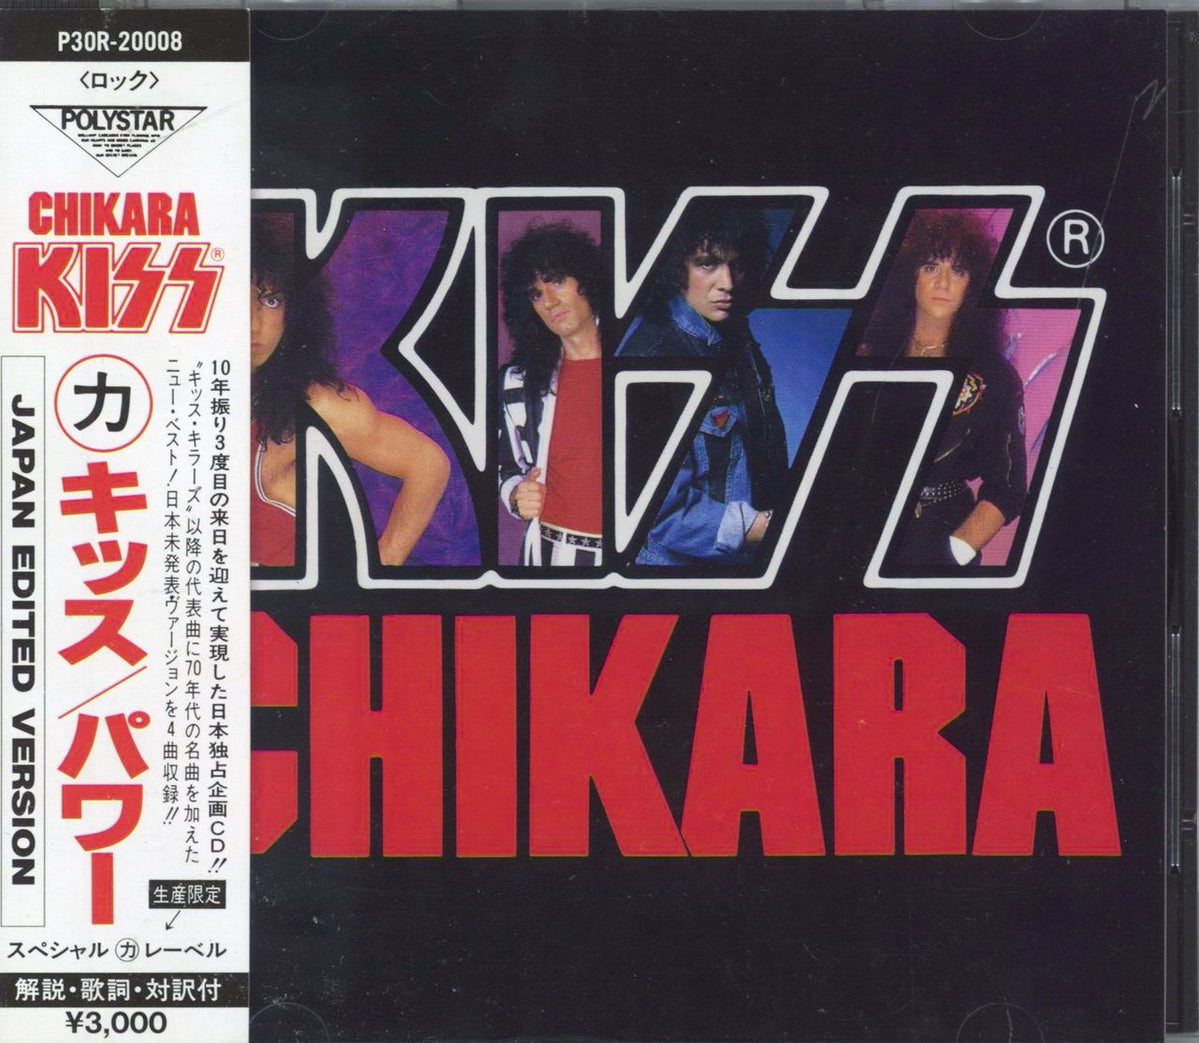 Kiss Chikara + obi Japanese CD album — RareVinyl.com